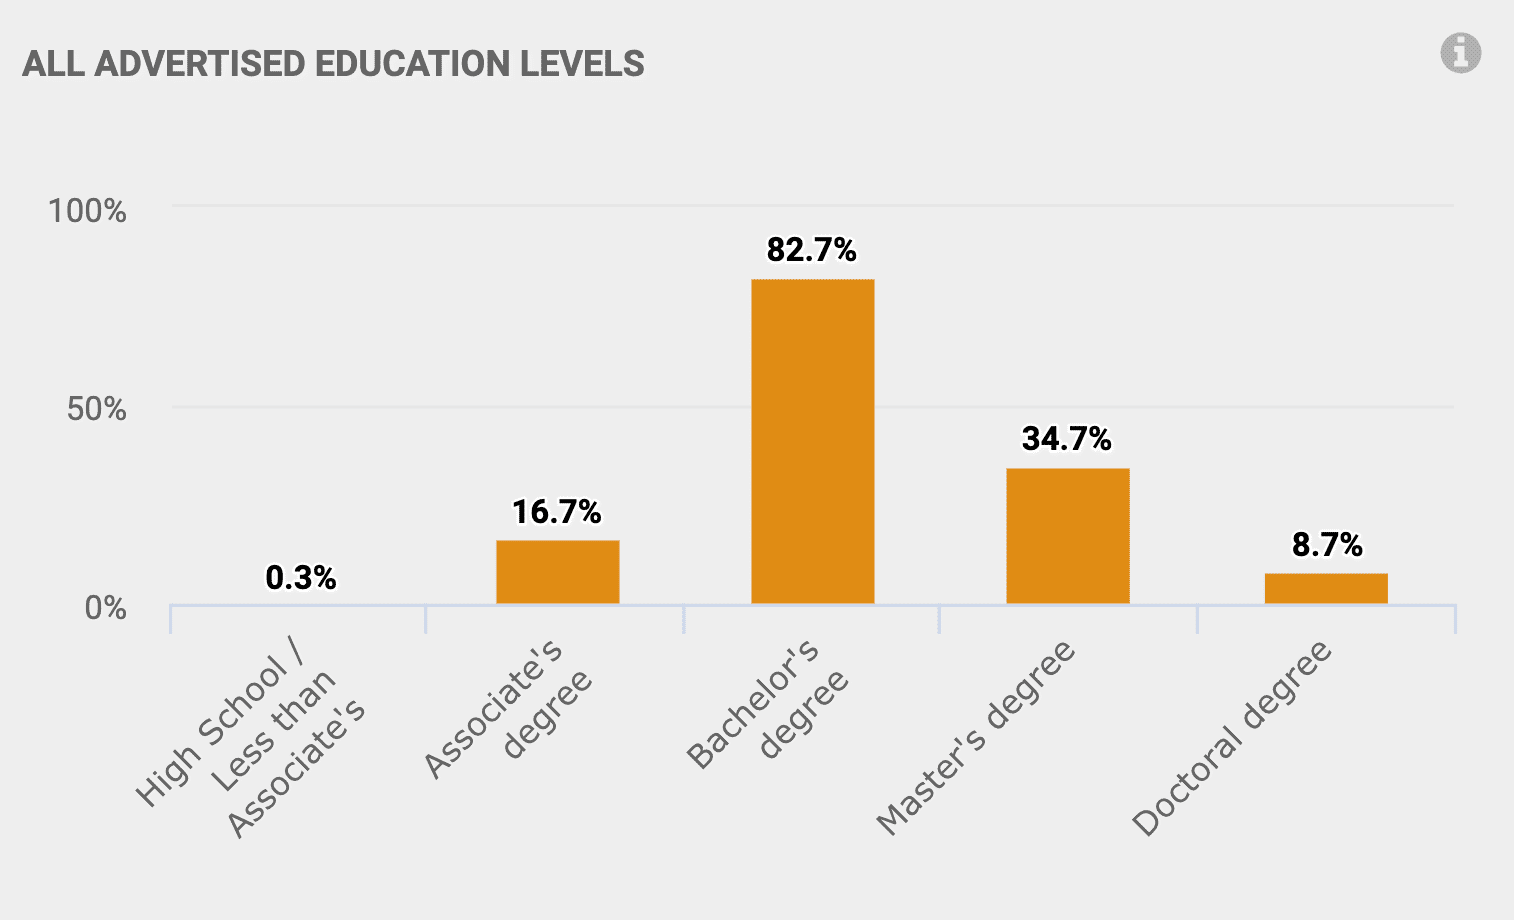 Associates Degree: 16.7% Bachelor's Degree: 82.7% 
								Master's Degree: 34.7% Doctoral Degree: 8.7%